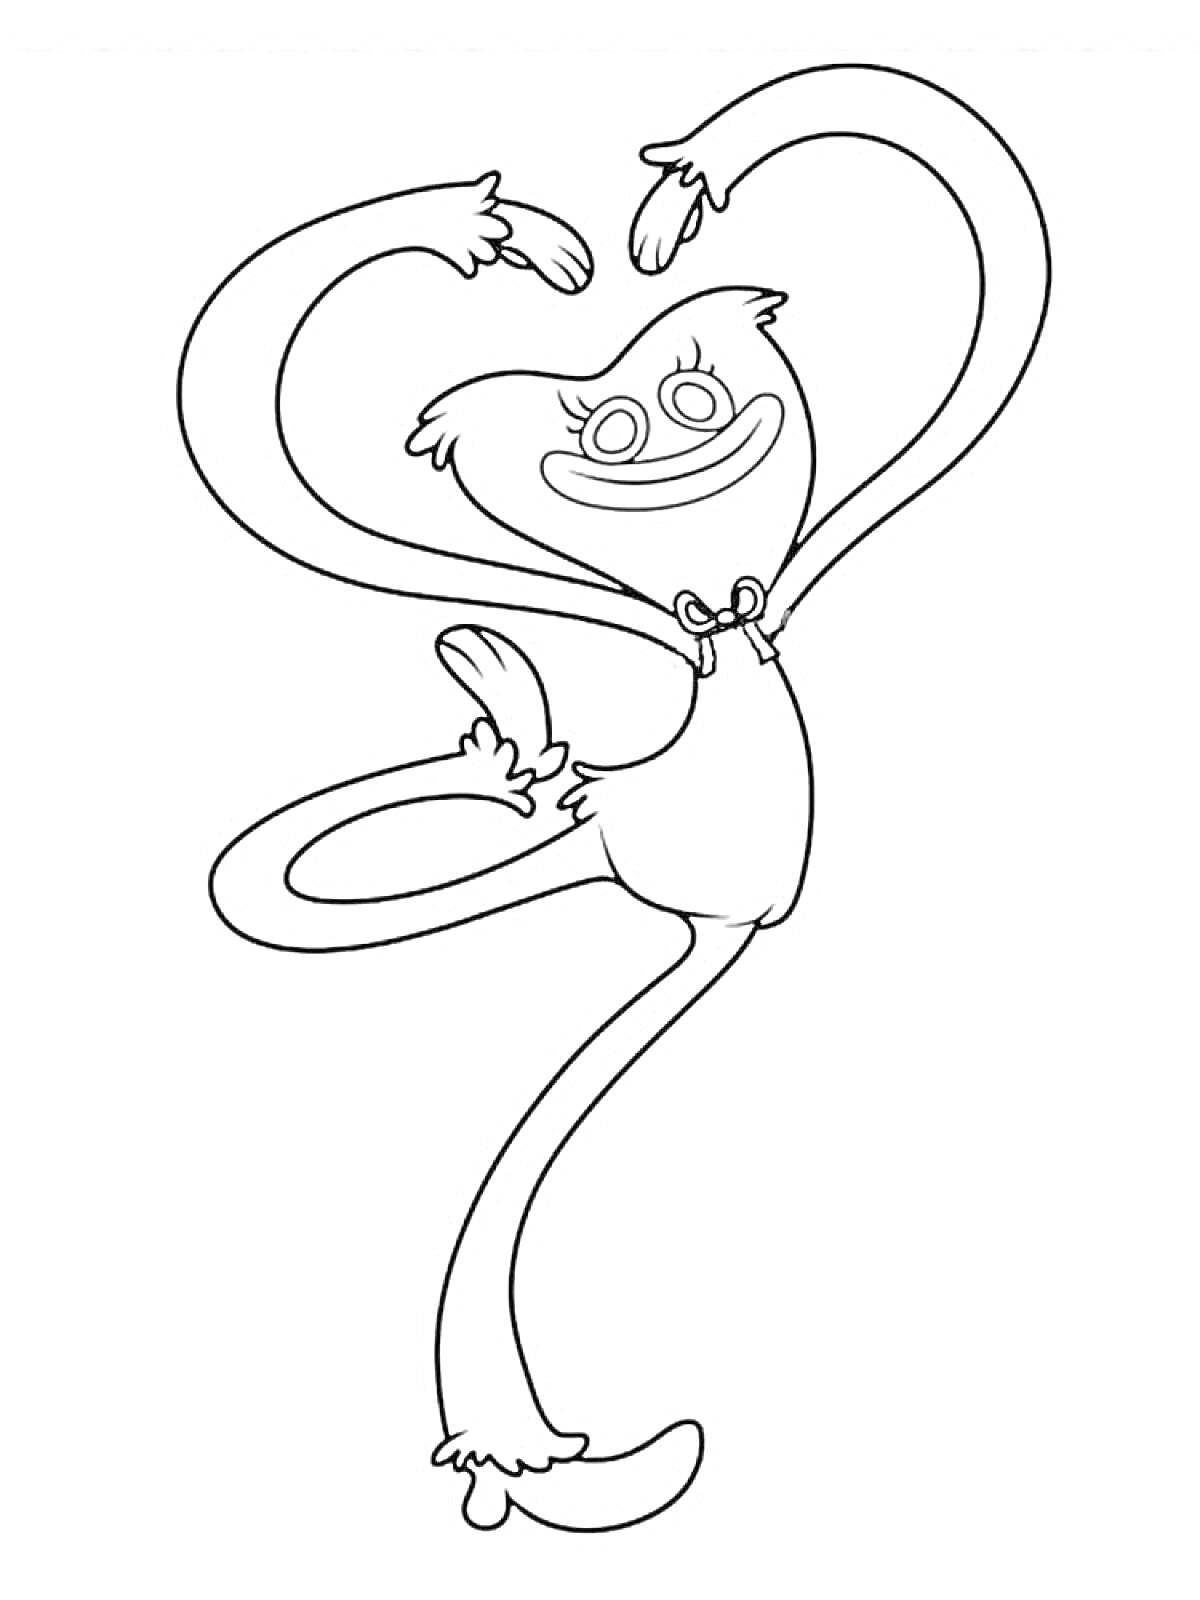 Киси Миси с изображением улыбающегося, танцующего персонажа с длинными руками и ногами